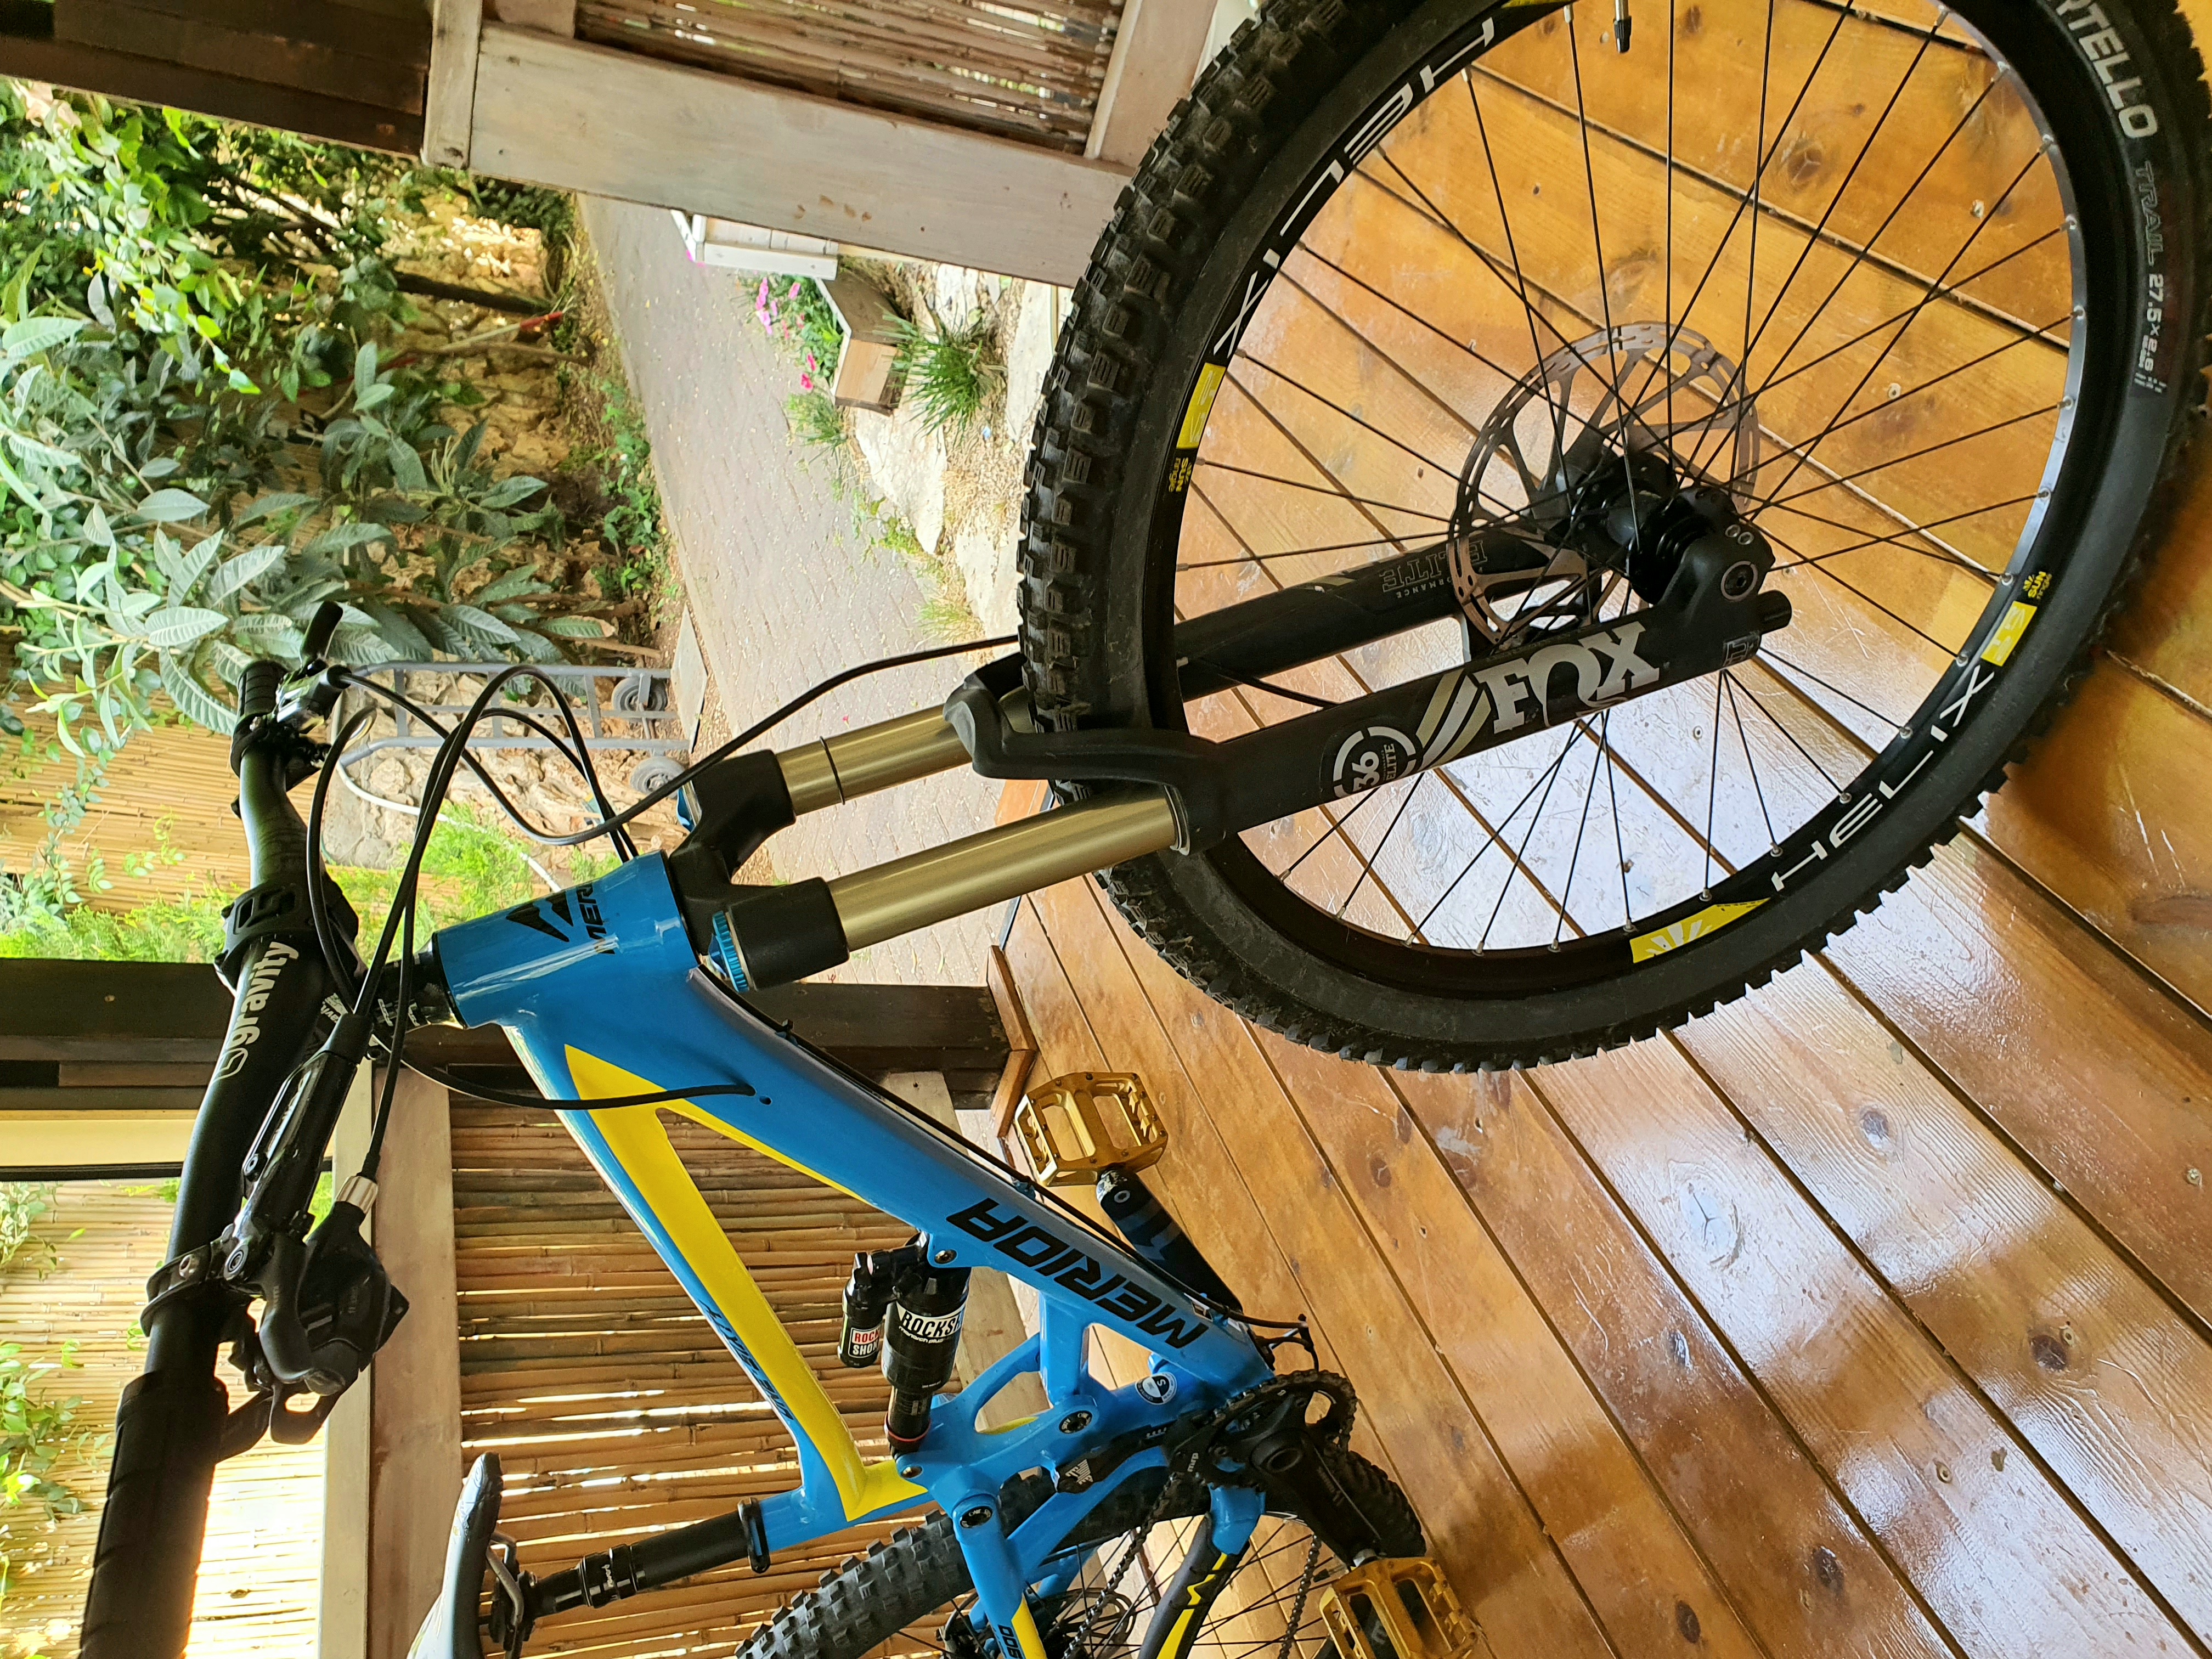 תמונה 3 ,Merida one sixty 7.900  למכירה בשלומי  אופניים  הרים שיכוך מלא